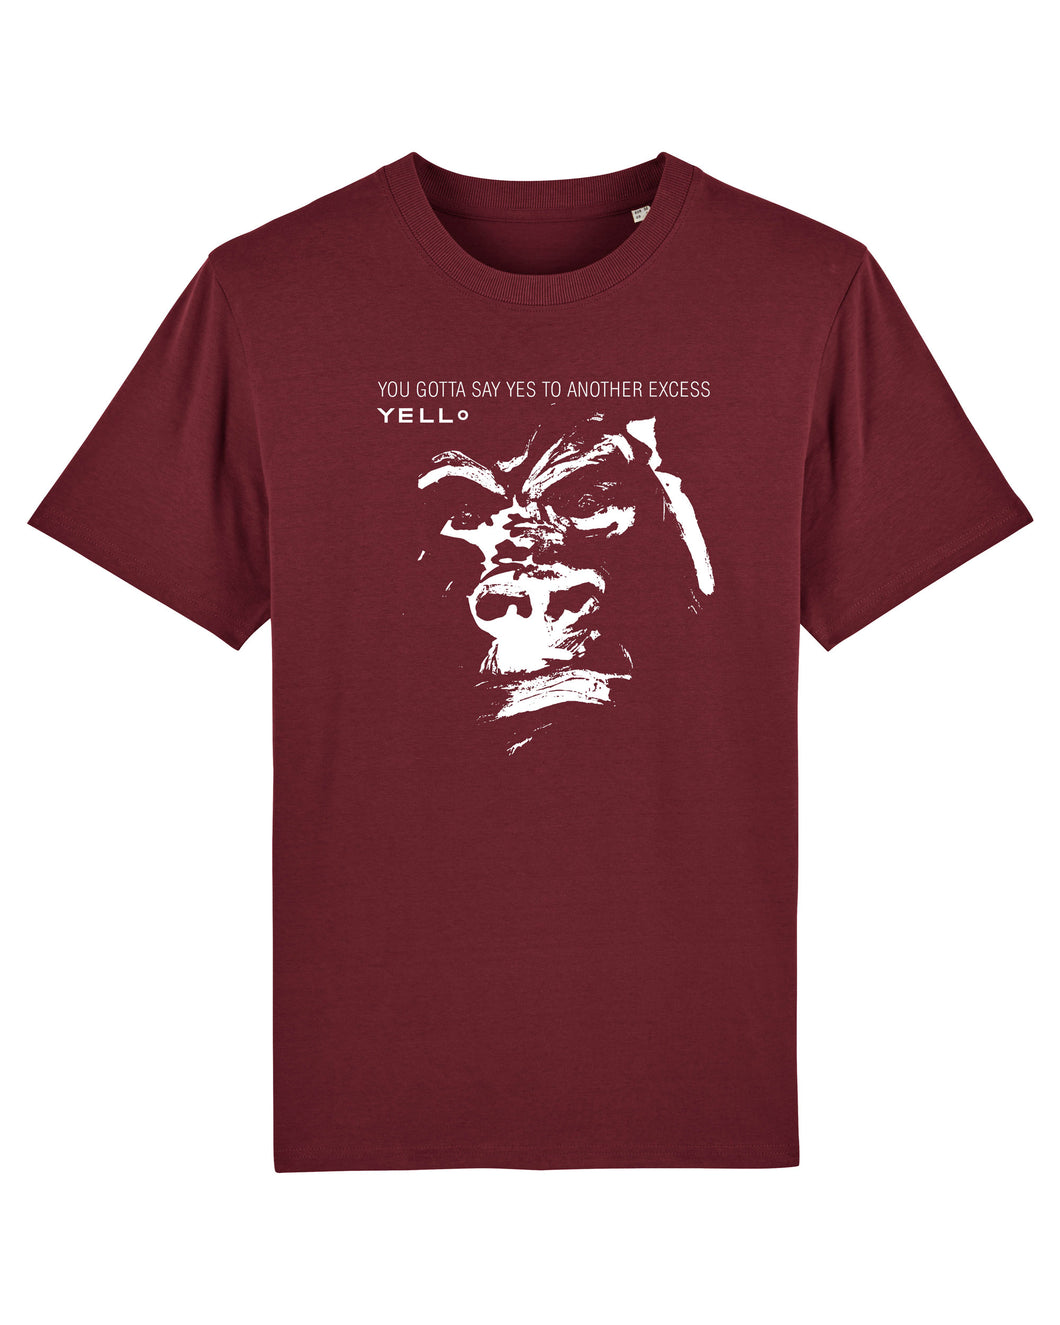 Yello - GORILLA - Organic T-Shirt